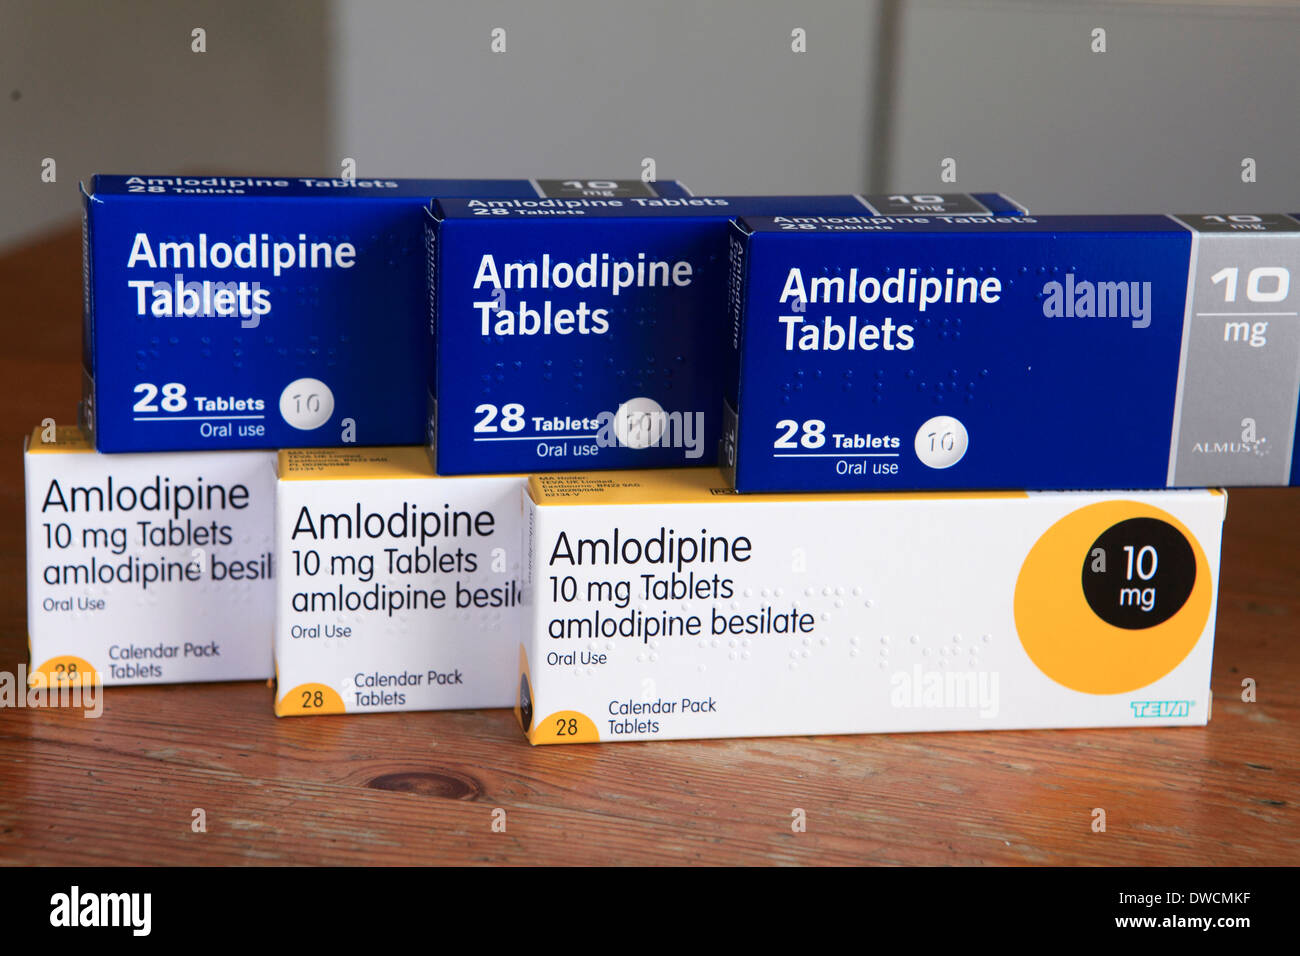 Reino Unido cajas de amlodipino, un medicamento de venta con receta  Fotografía de stock - Alamy